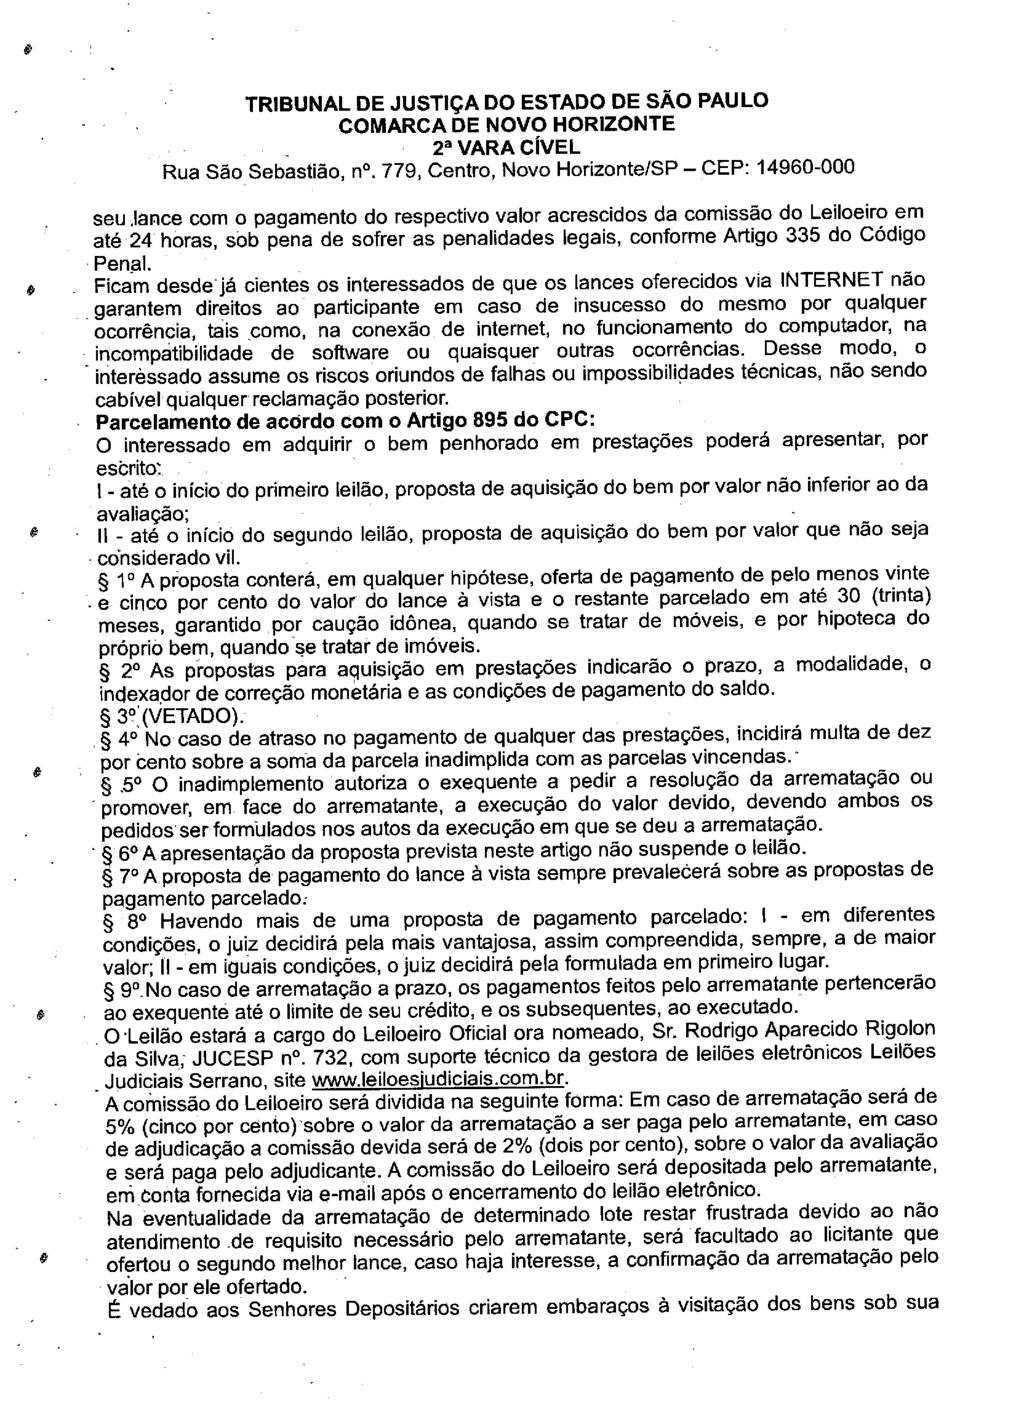 fls. 81 Este documento é cópia do original, assinado digitalmente por LUZIA REGIS DE OLIVEIRA DUARTE, liberado nos autos em 19/06/2019 às 13:12.